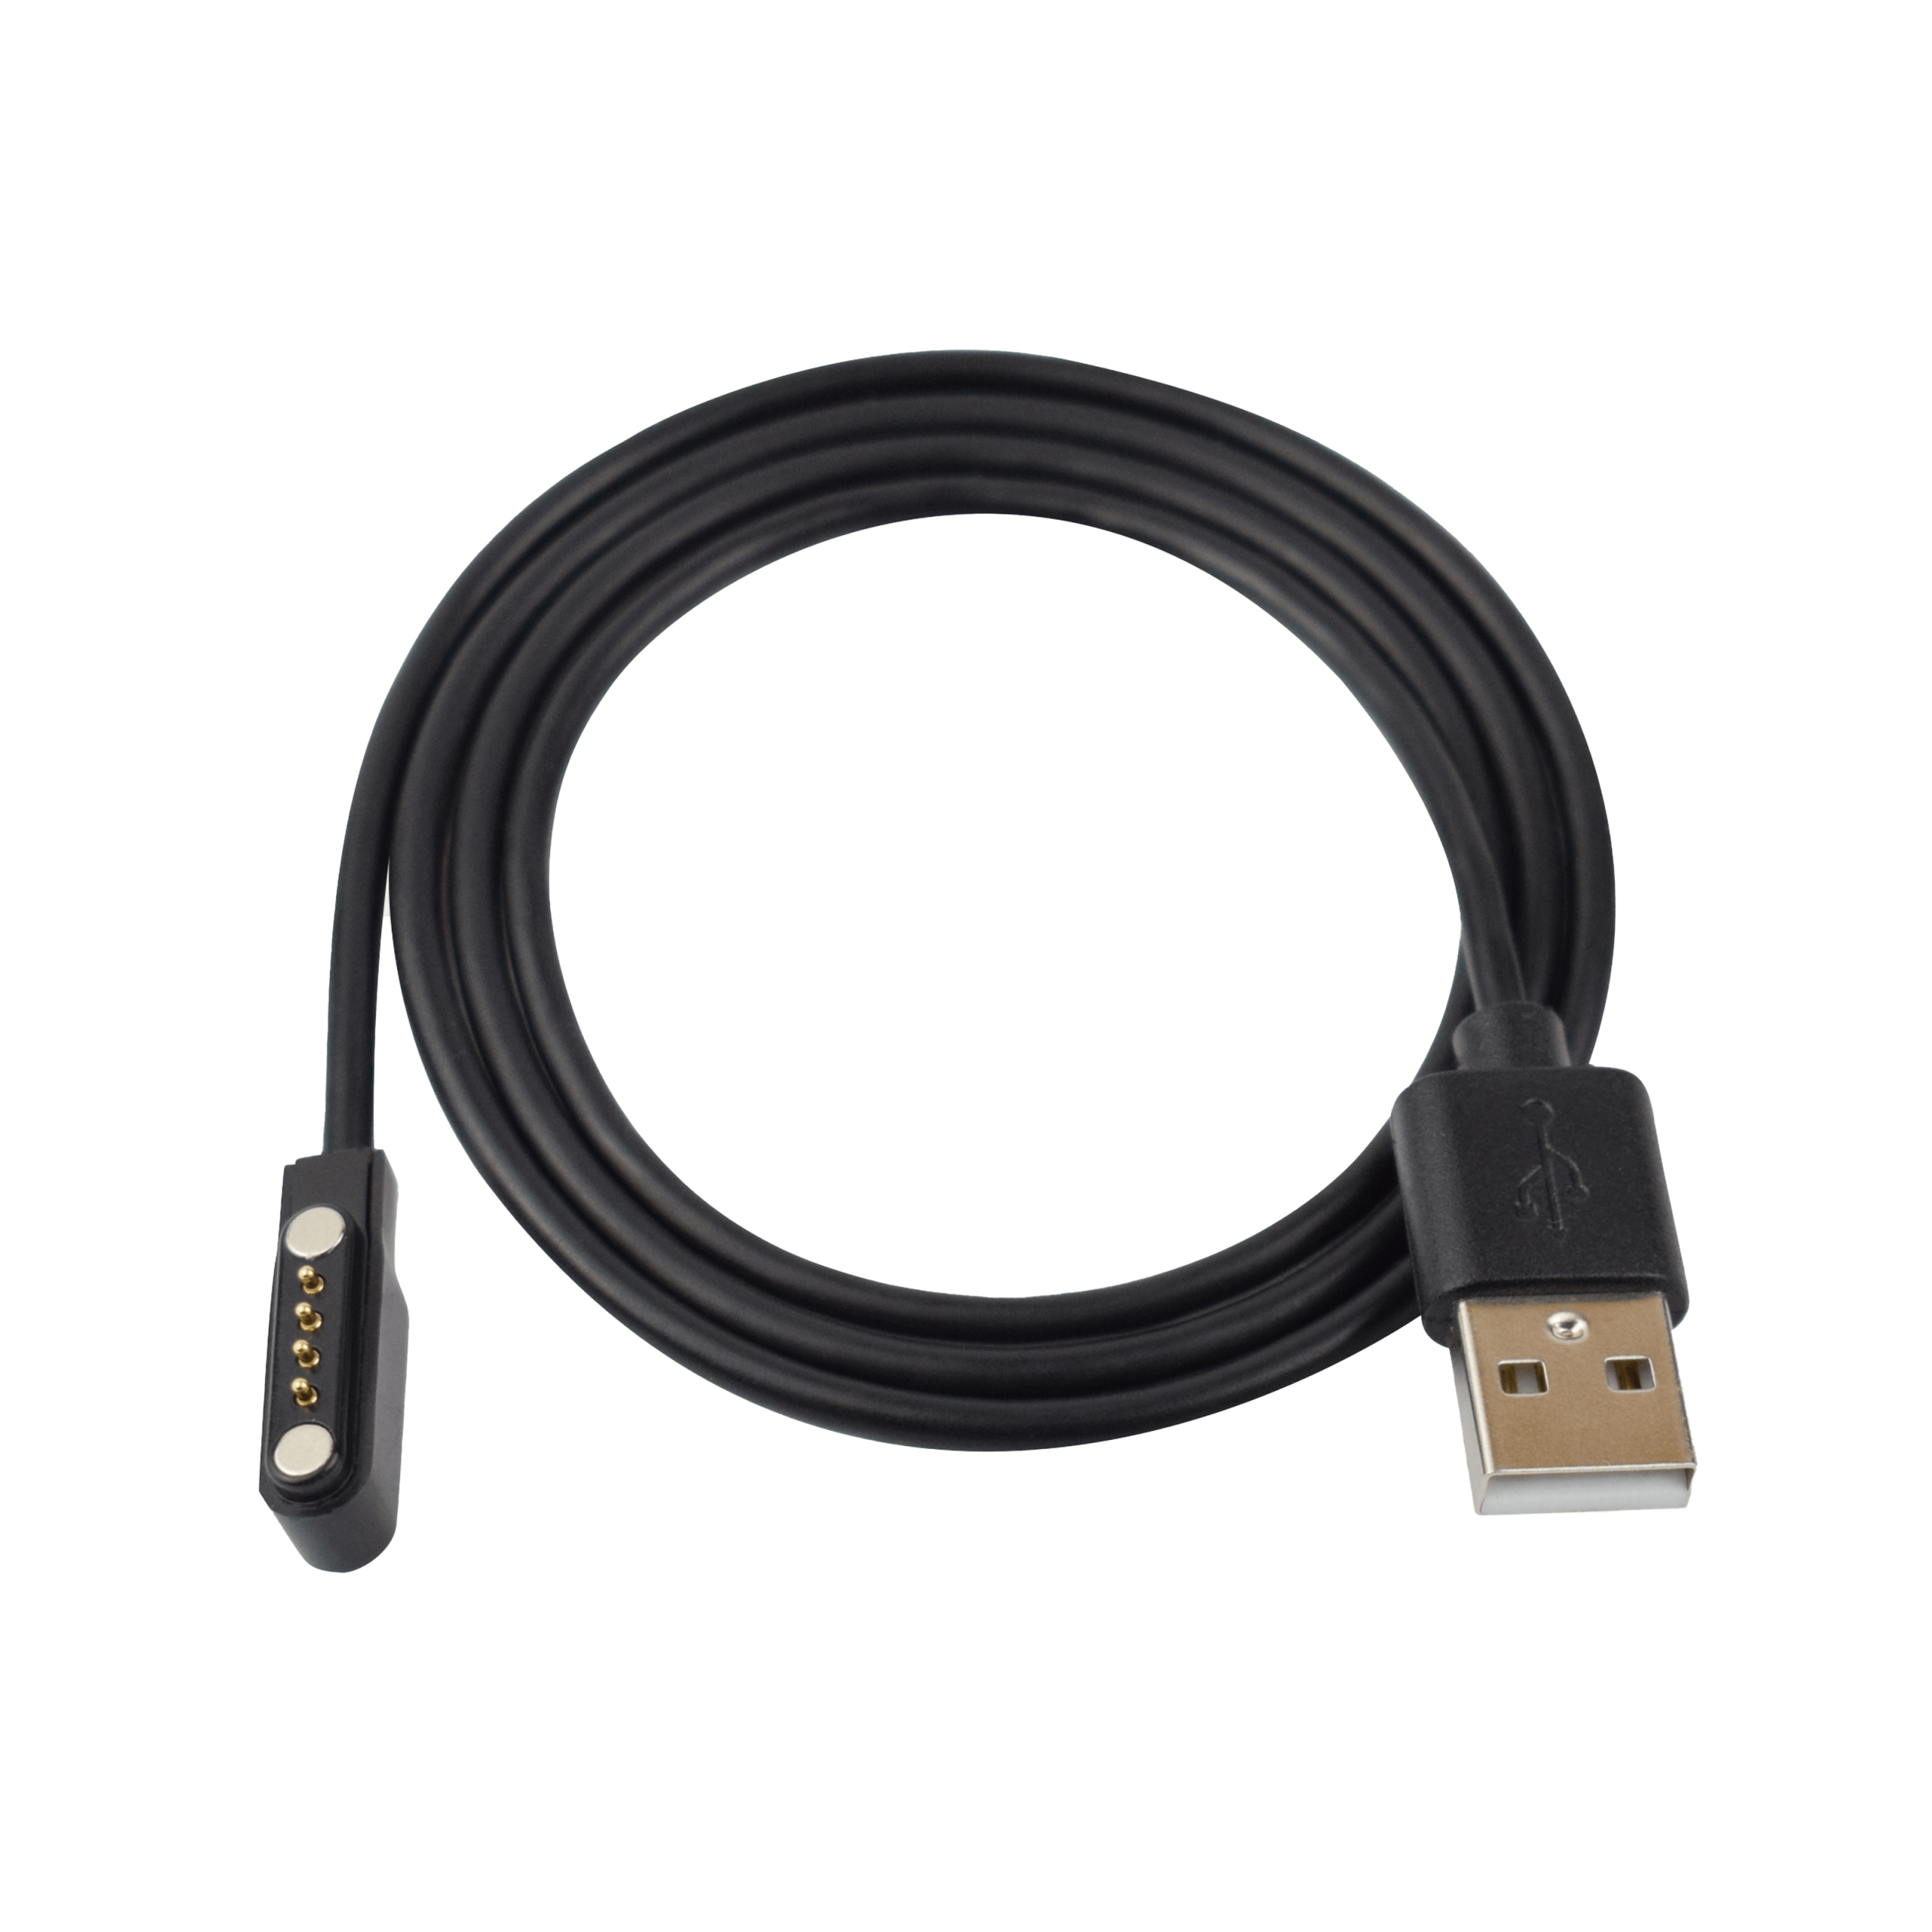 Produktbild ohne Hintergrund Ersatz-USB-Ladekabel mit Magnetanschluss für PAJ GPS Tracker